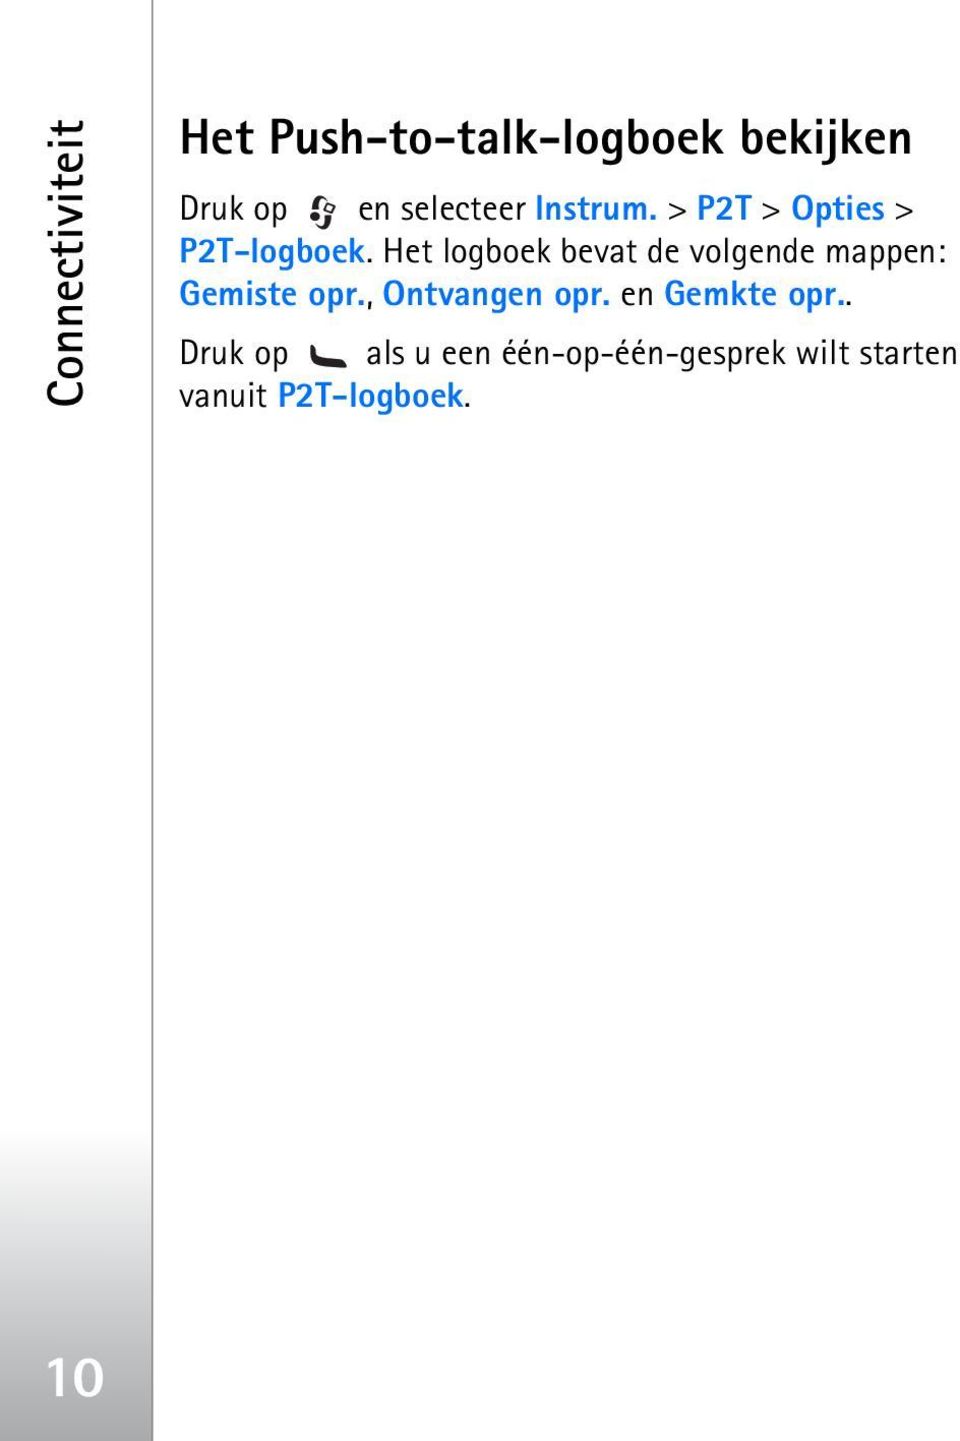 Het logboek bevat de volgende mappen: Gemiste opr., Ontvangen opr.